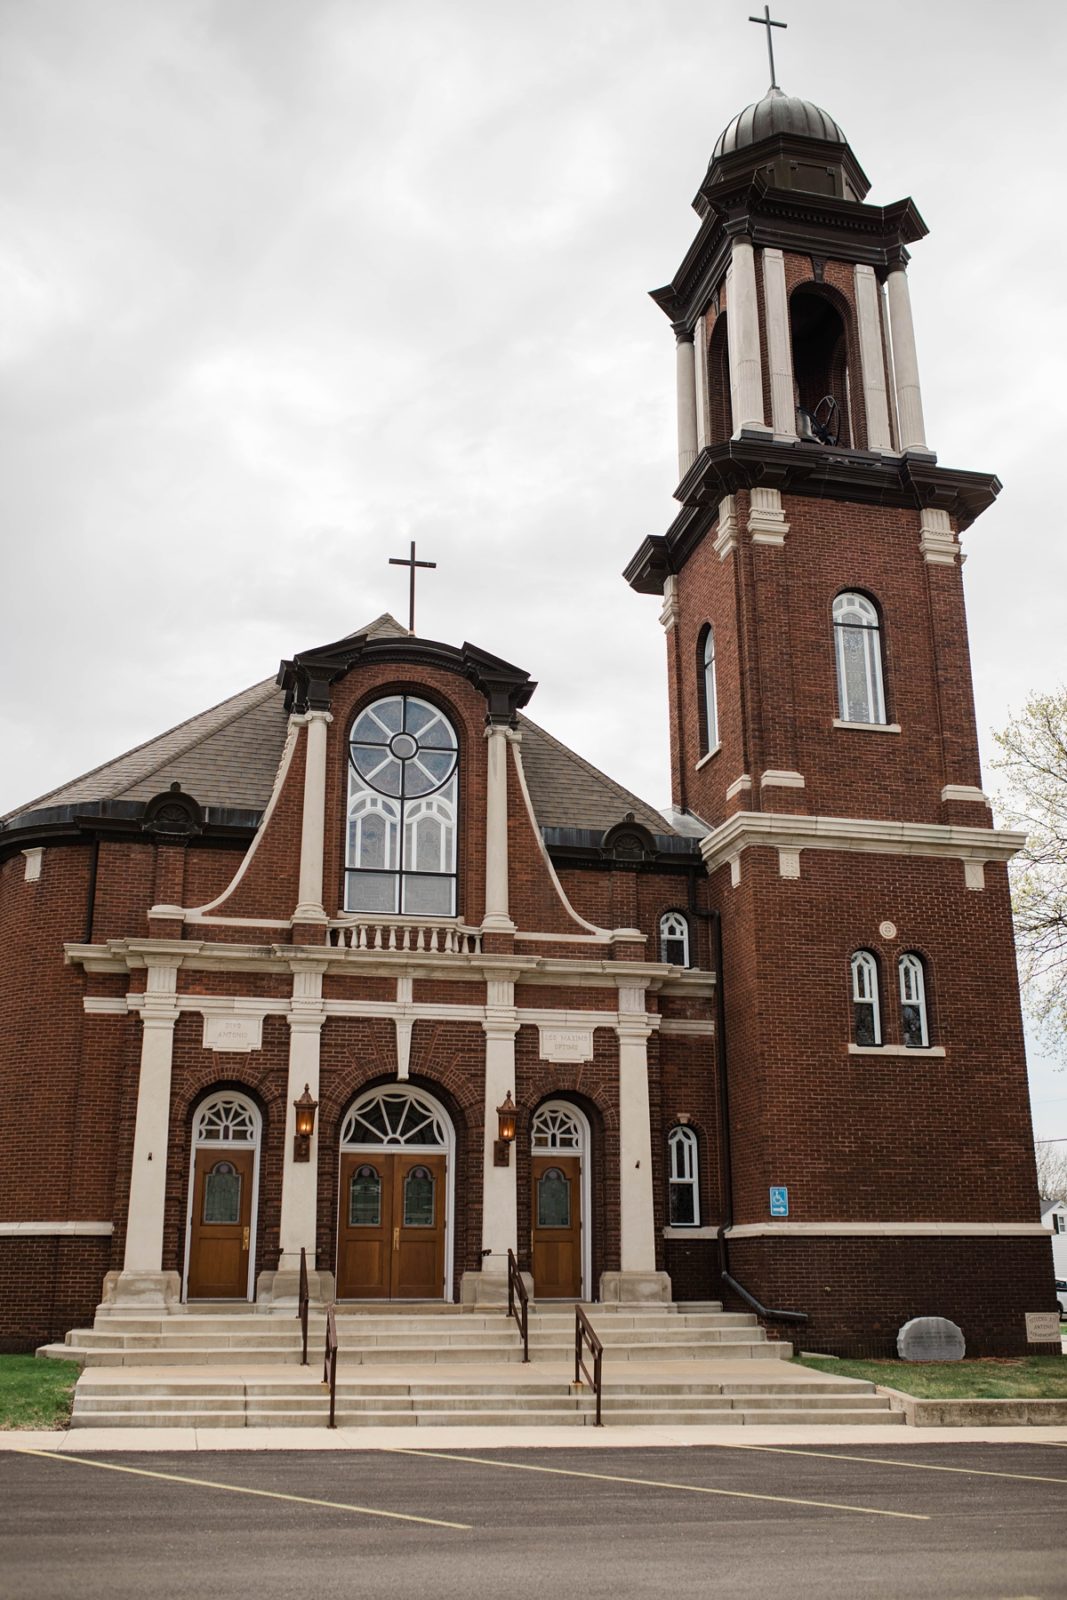 Saint Anthony's Catholic Church in Atkinson, Illinois